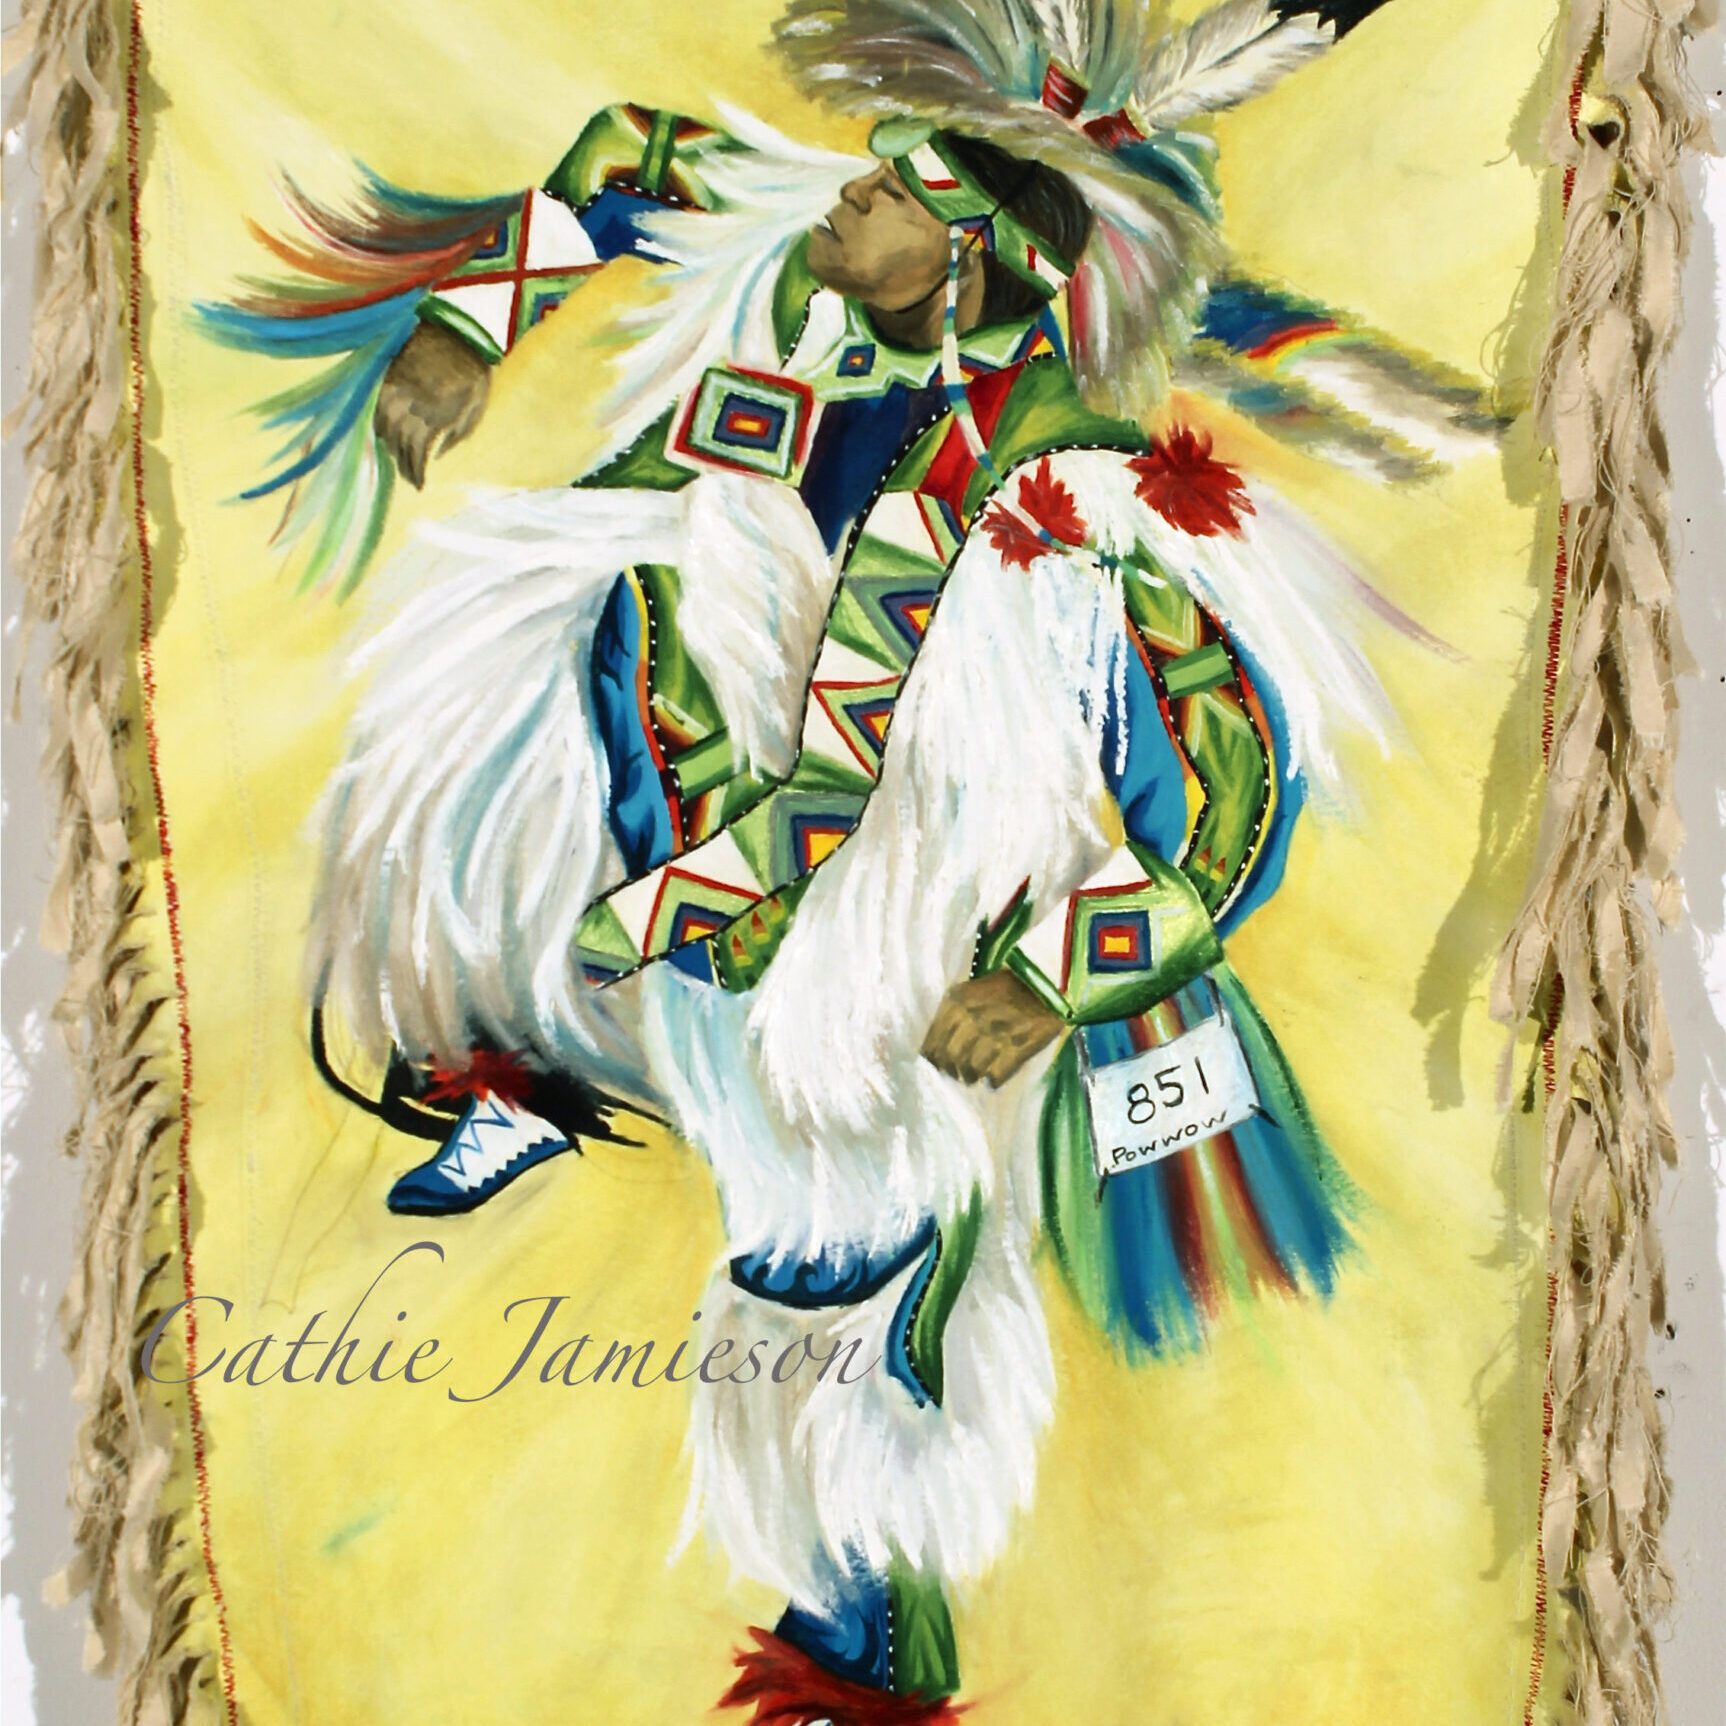 Cathie Jamieson- Indigenous man powwow regalia Painting